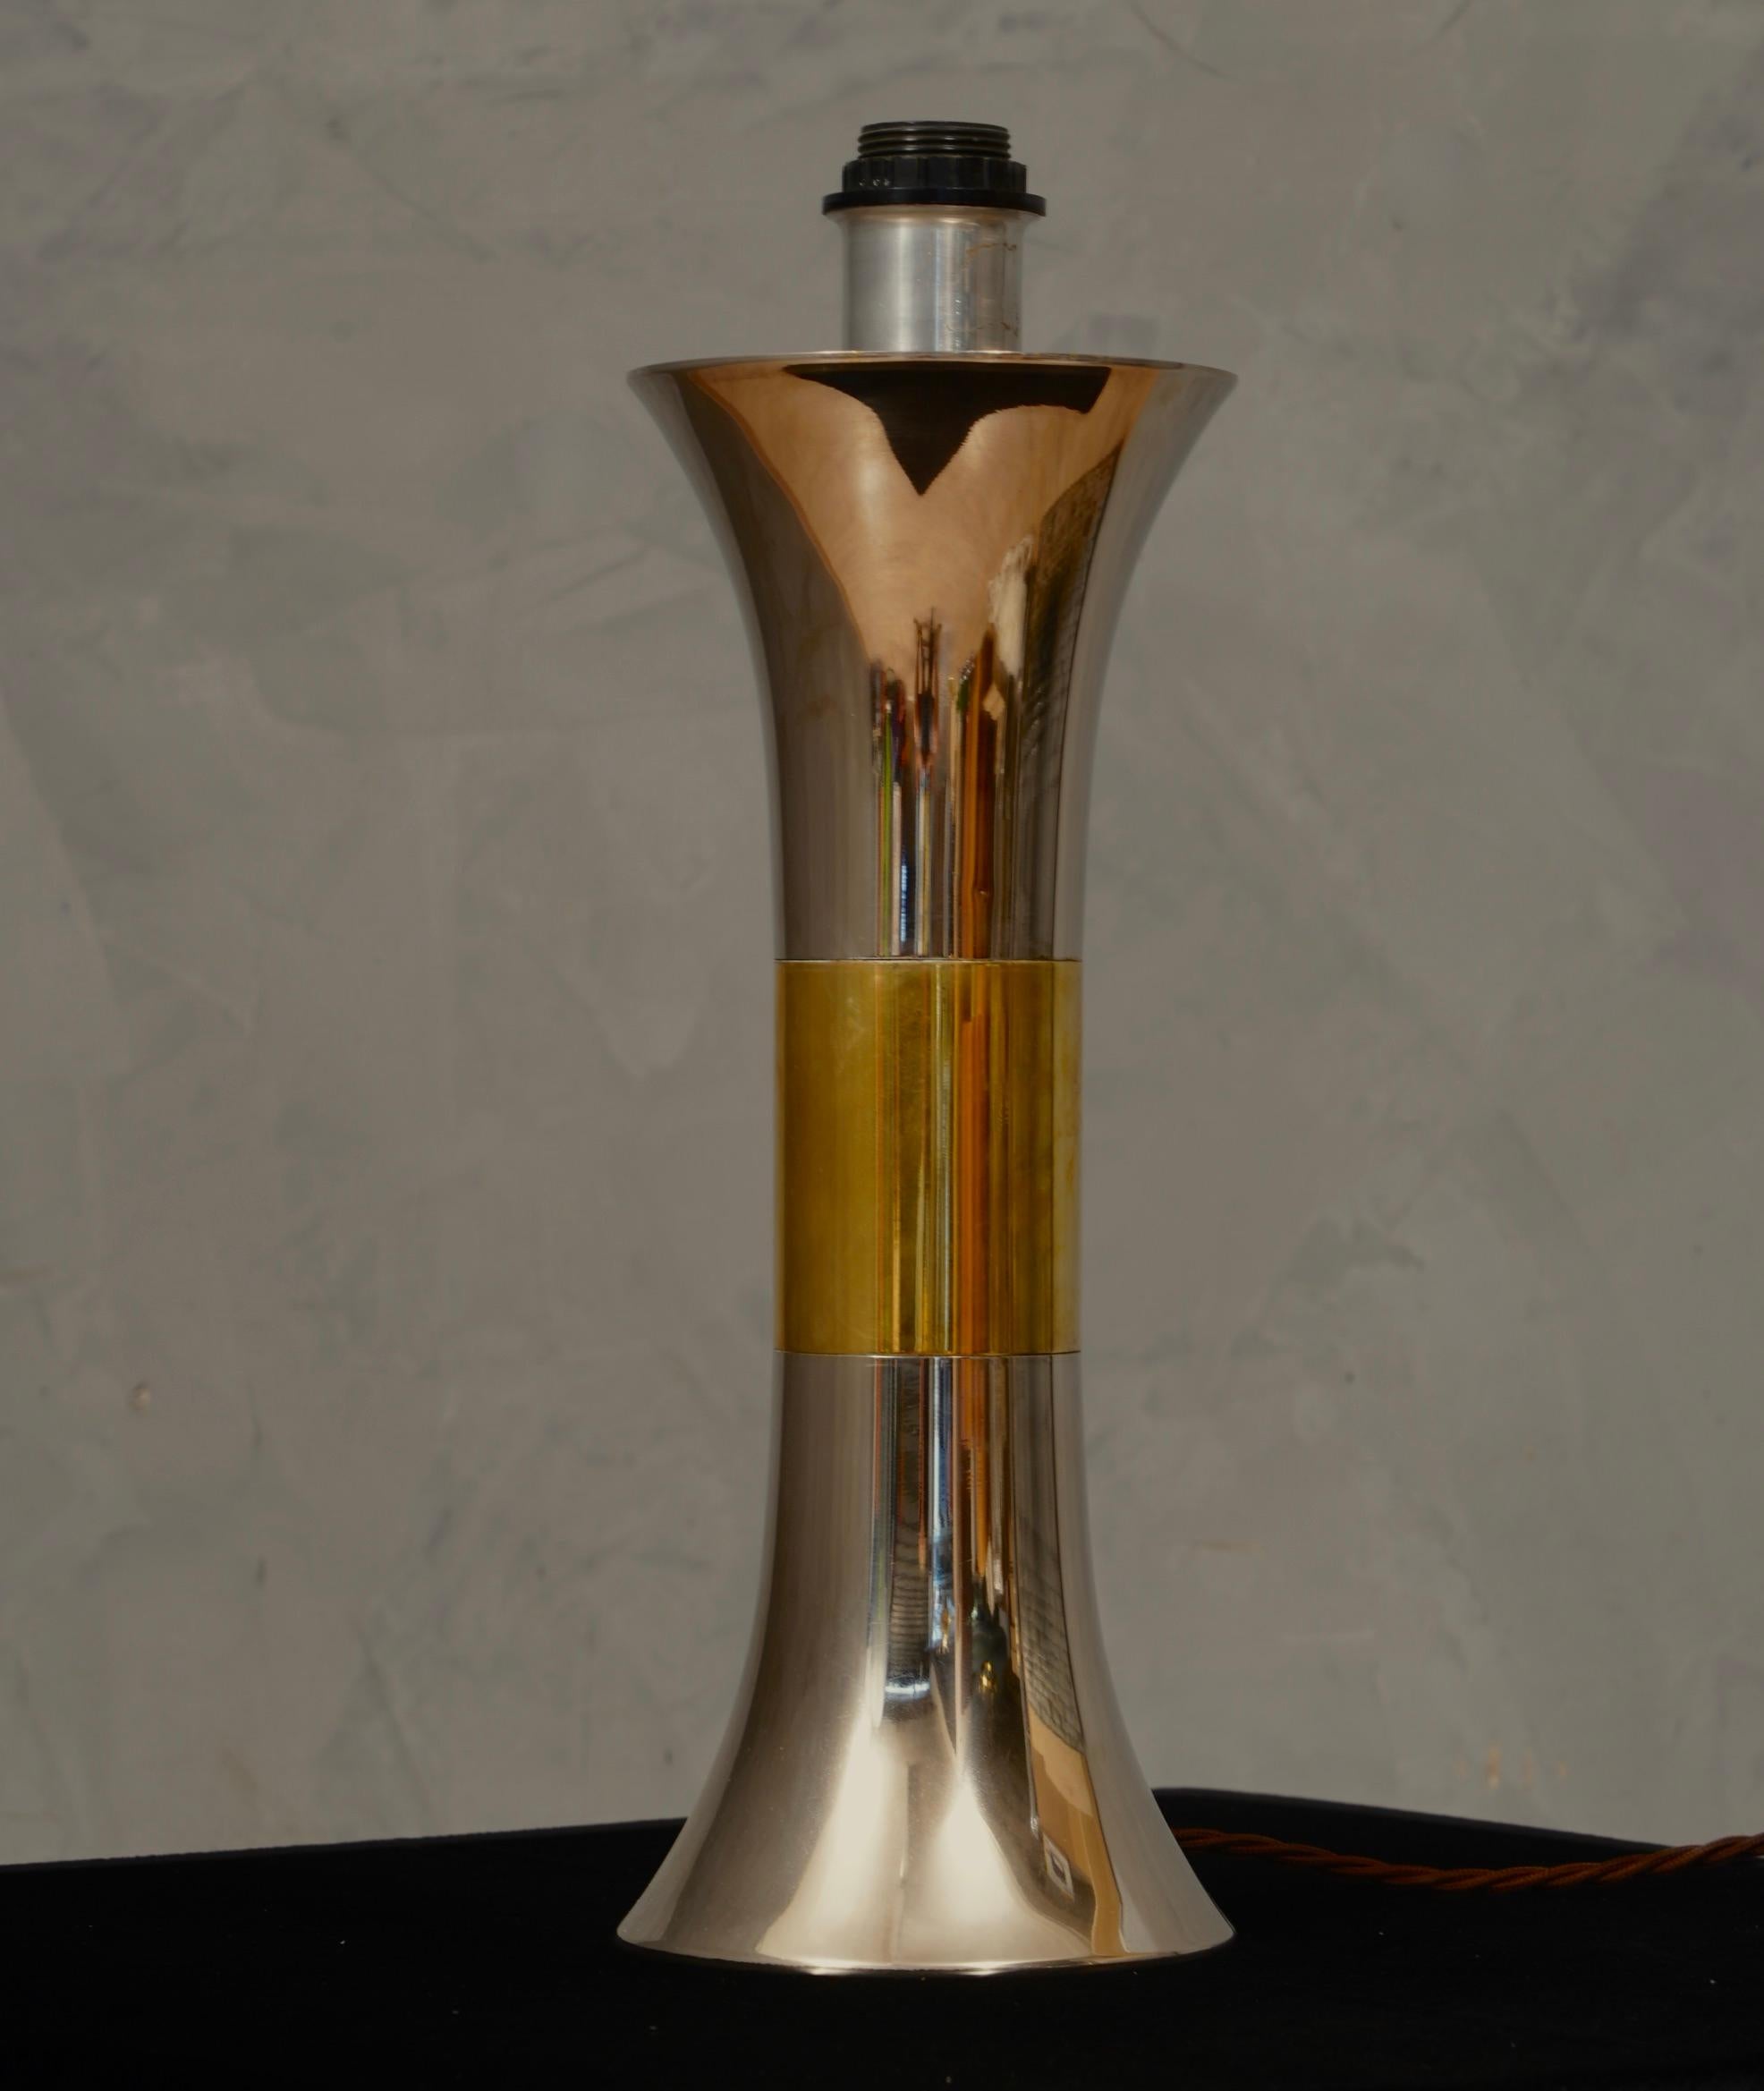 Lampe de table raffinée et particulière de Nucci Valsecchi, épurée dans son style, la lampe de table est pleine de matériaux précieux et distinctifs.

La lampe à poser a une forme ronde et est fabriquée en acier et en laiton. Son style est très